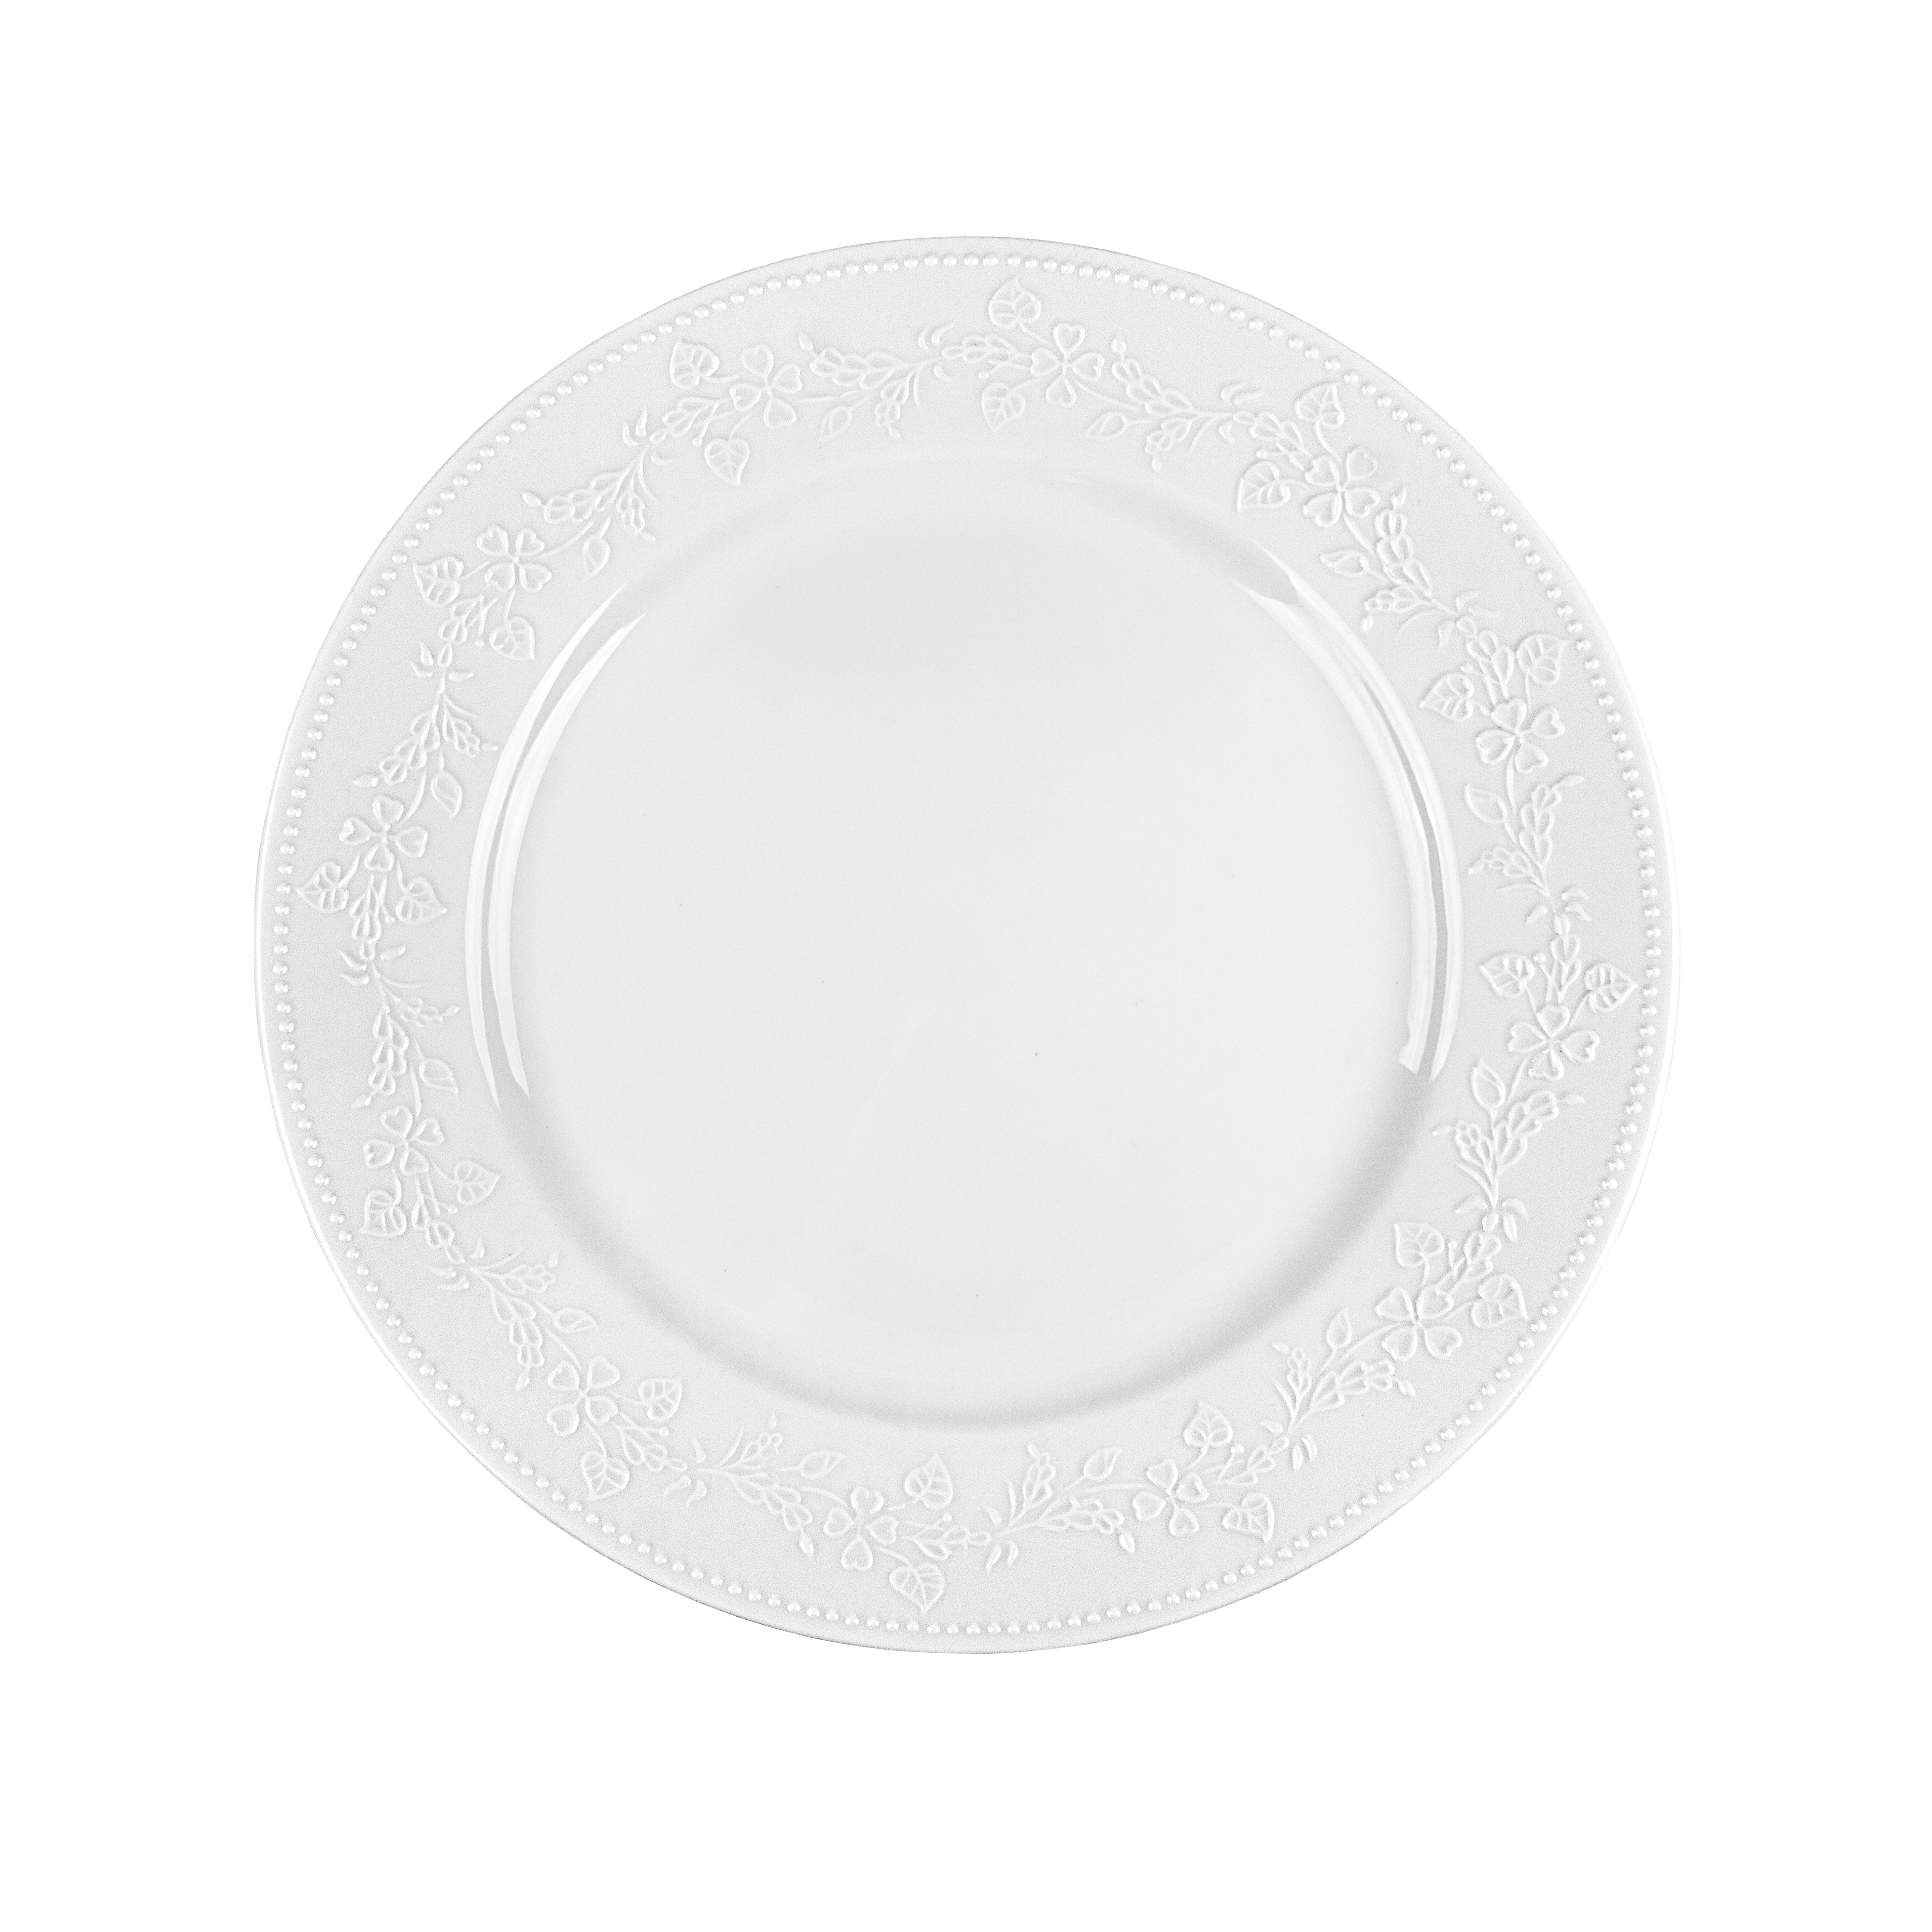 Πιάτο Ρηχό Πορσελάνης Λευκό Kea Oriana Ferelli 27εκ. PRPW350001 (Σετ 6 Τεμάχια) (Υλικό: Πορσελάνη, Χρώμα: Λευκό, Μέγεθος: Μεμονωμένο) - Oriana Ferelli® - PRPW350001